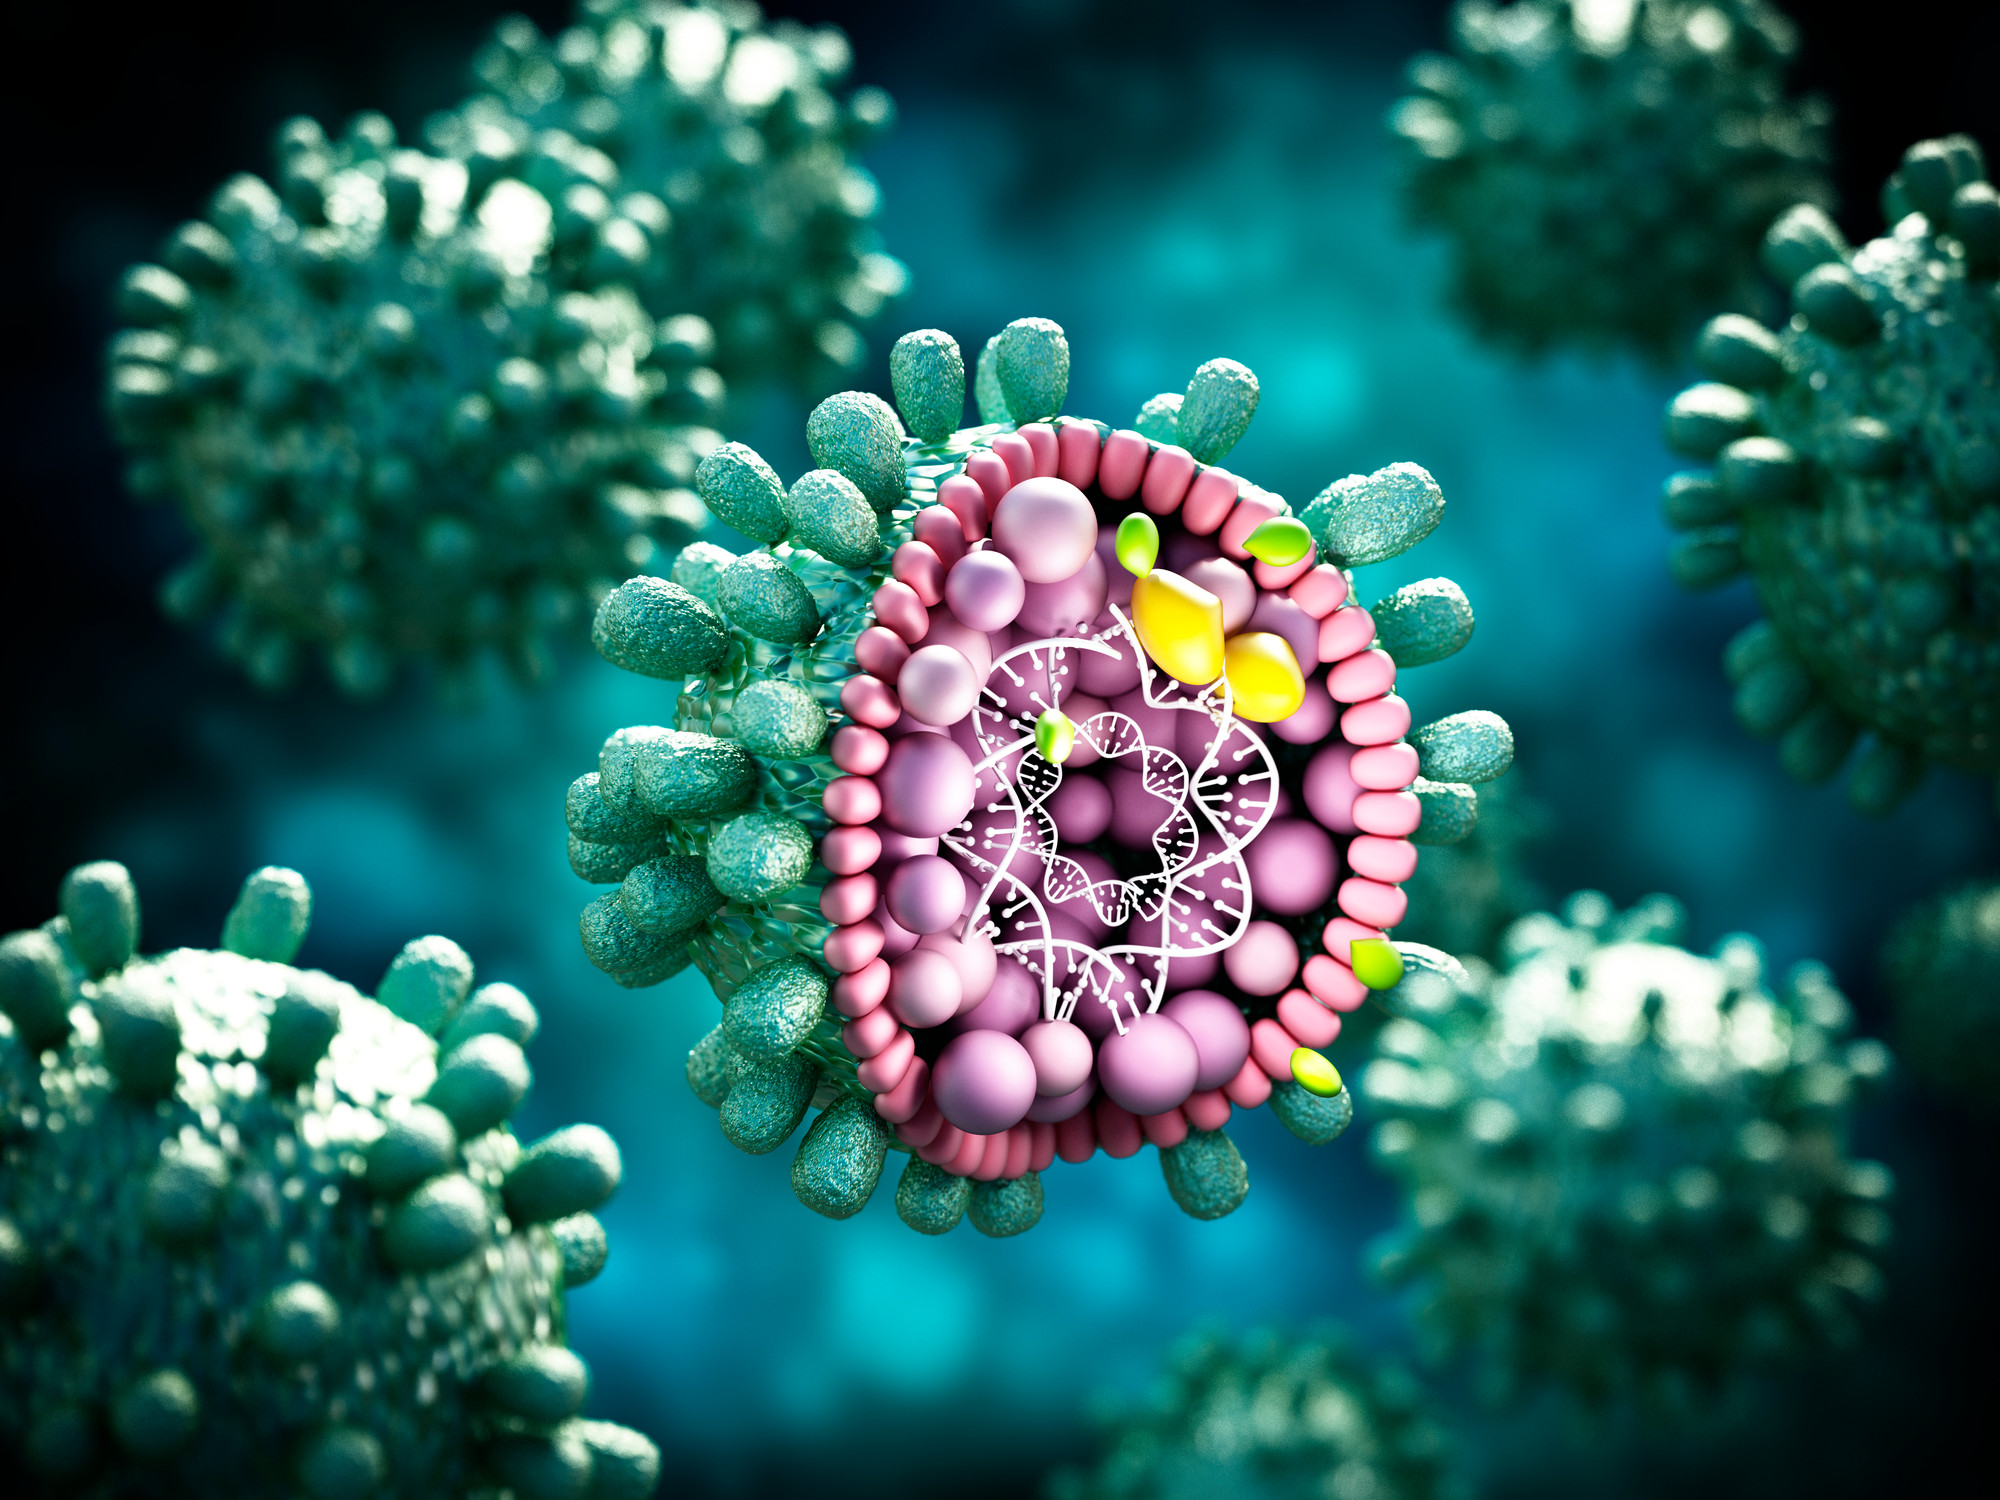 Kürzlich wurden Tests auf Hepatitis B und C in die Gesundheitsvorsorge ("Check-up") aufgenommen. Versicherte ab 35 Jahren können sich einmalig auf diese beiden Erkrankungen untersuchen lassen. Dr. med. Ulrich Scharmer sprach darüber mit der Virologin Prof. Dr. med. Ulrike Protzer, München.